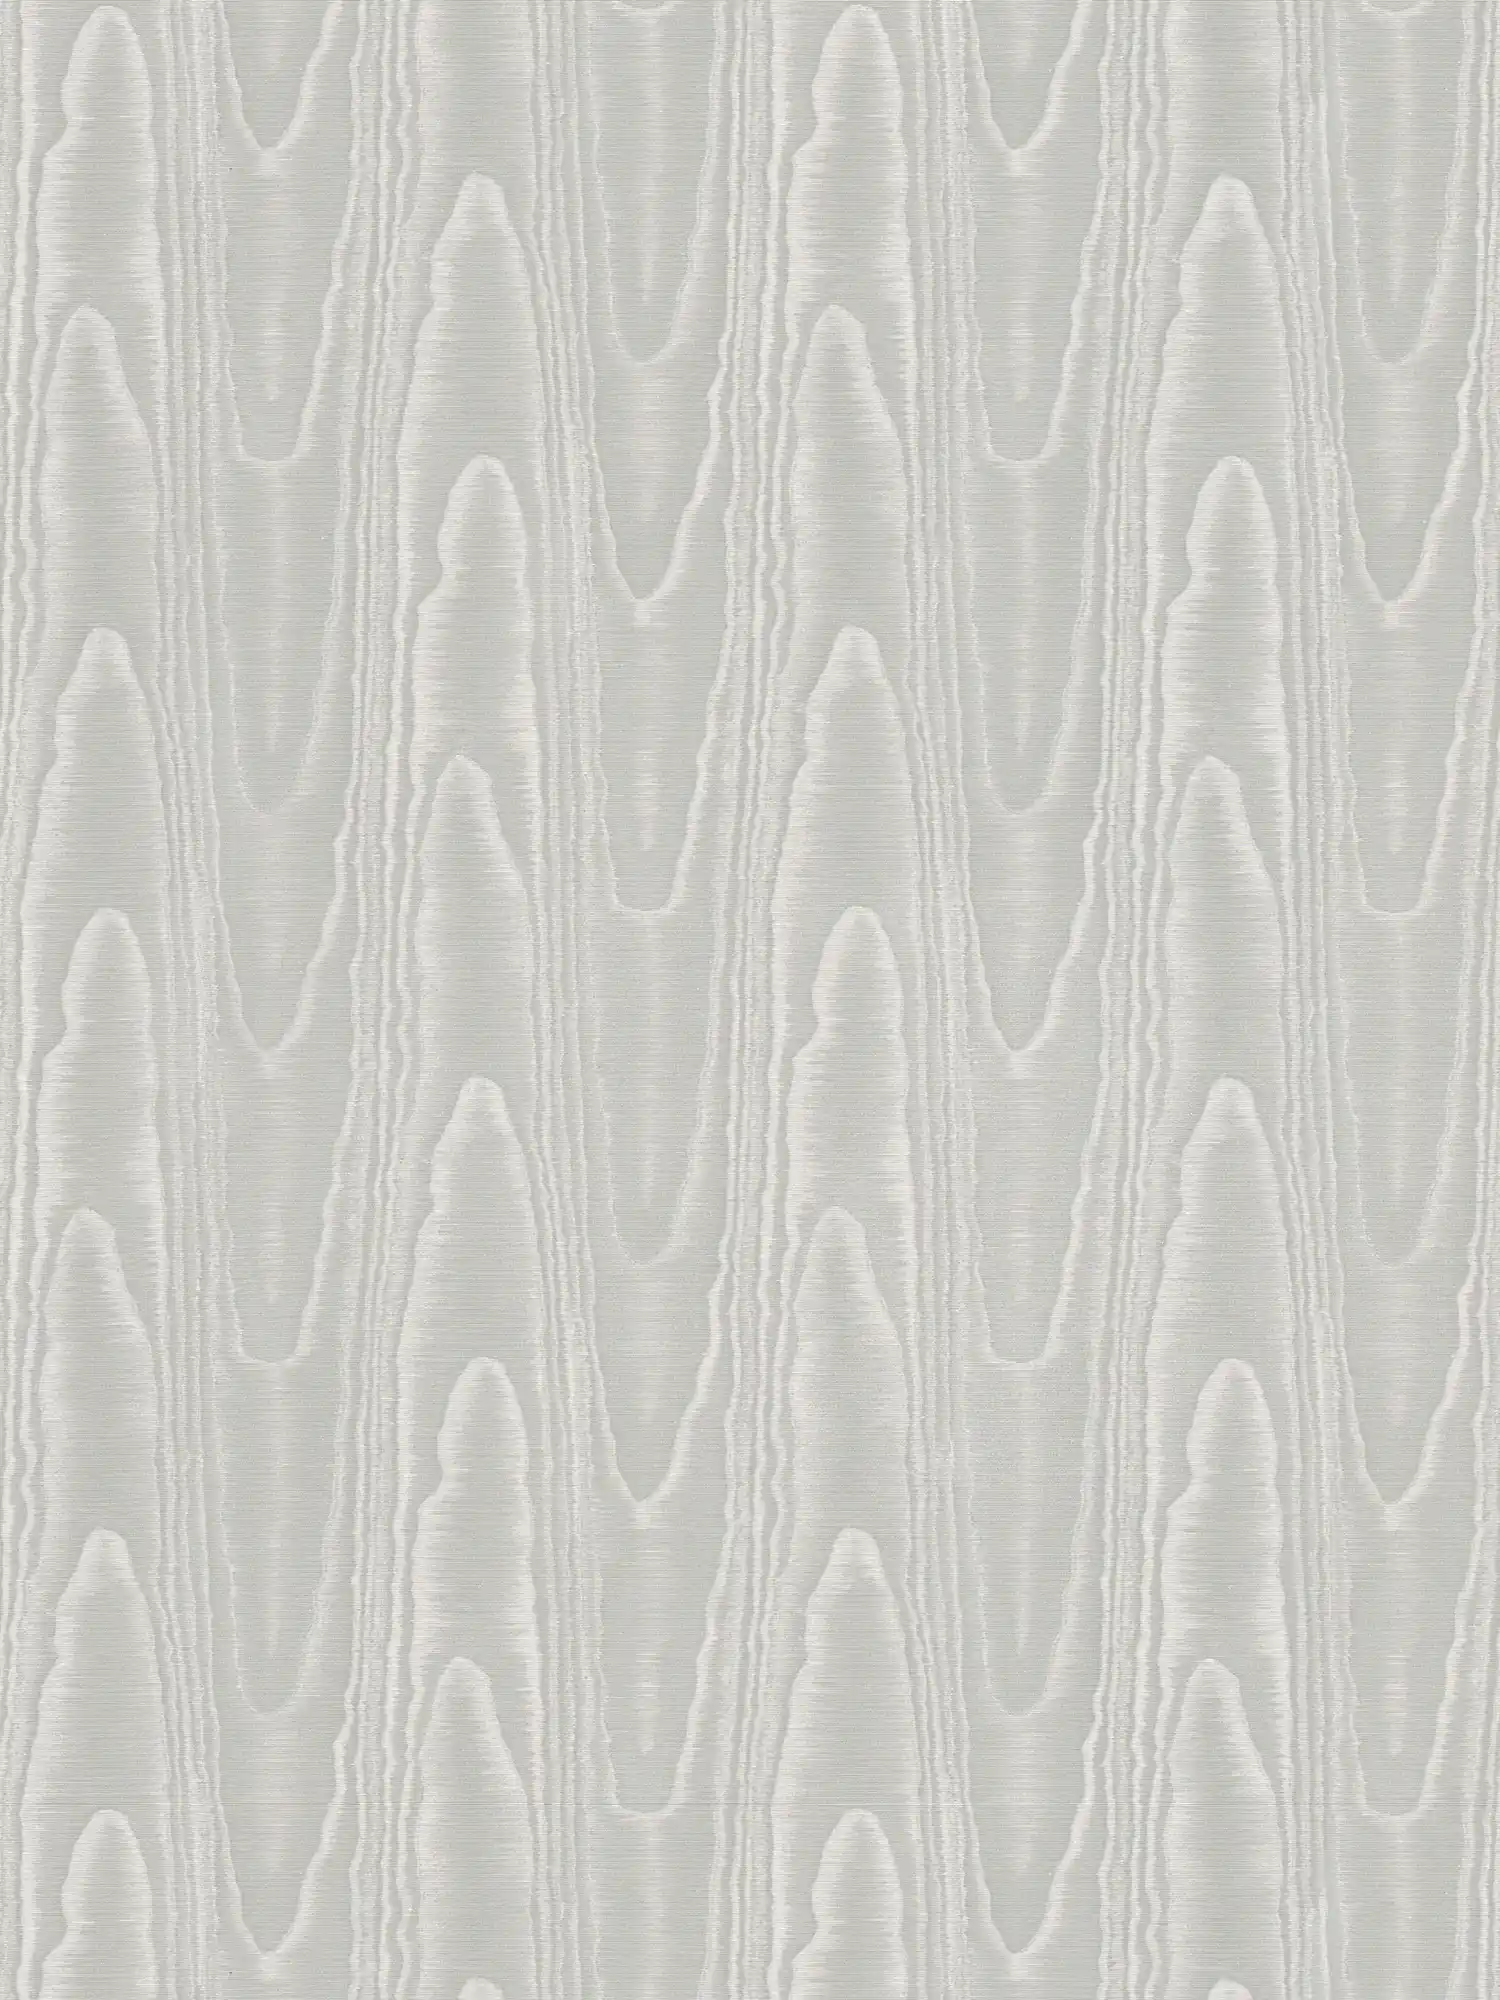 Silver grey wallpaper silk moiré & wave pattern - grey
